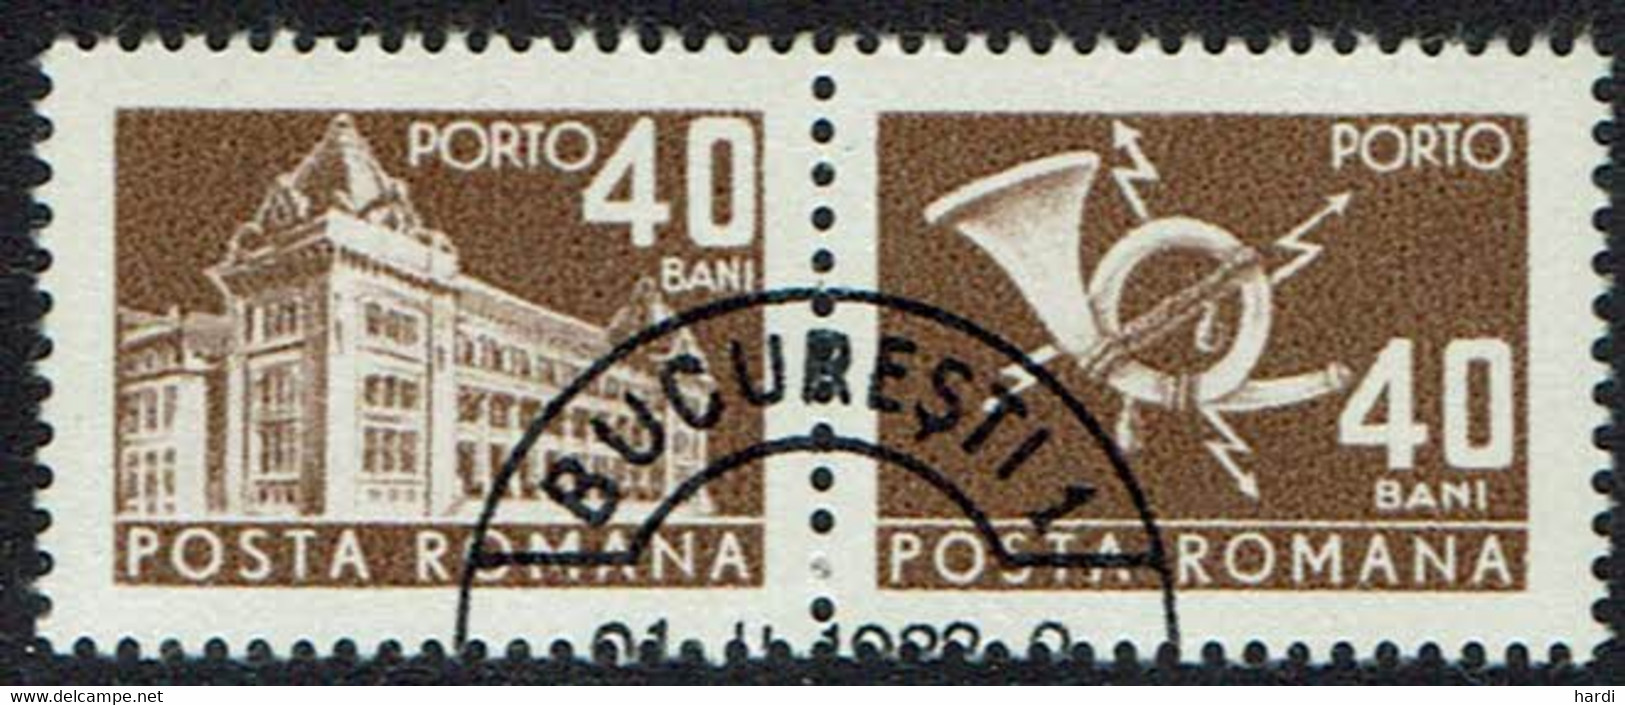 Rumänien Portomarken 1967, Mi.Nr 111, Gestempelt - Portomarken